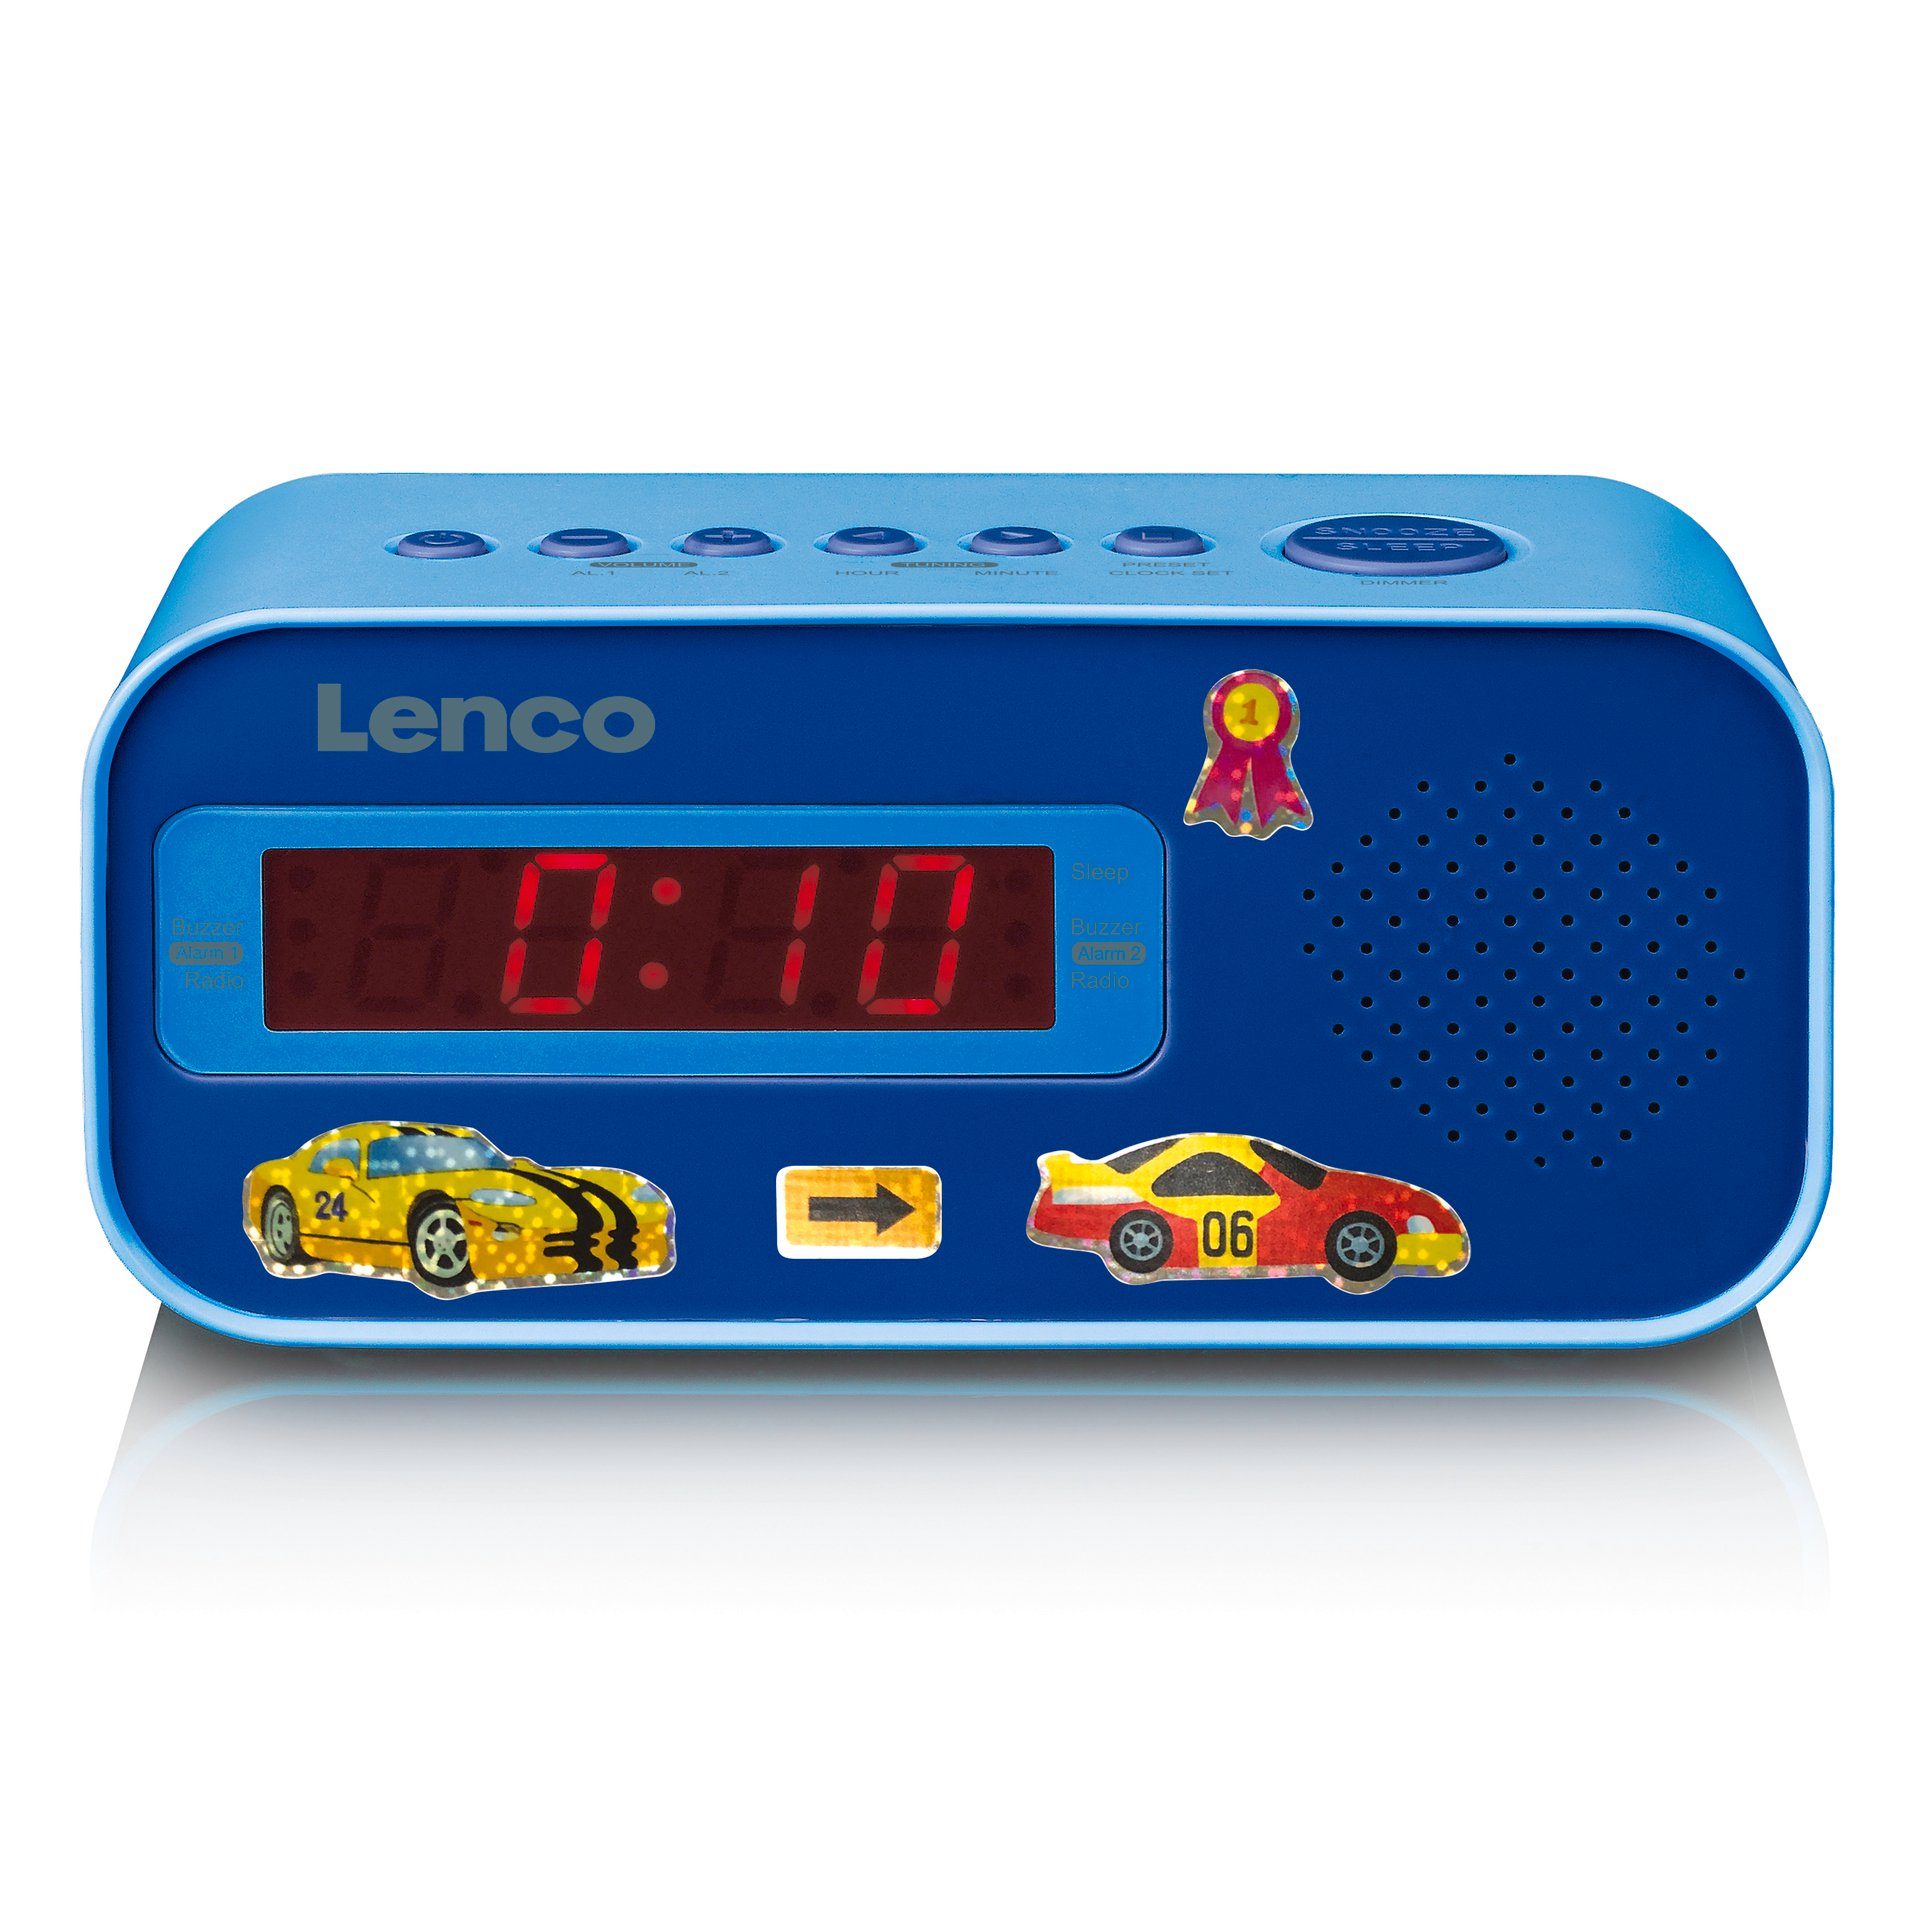 Lenco (FM-Tuner) Uhrenradio CR-205 Blau